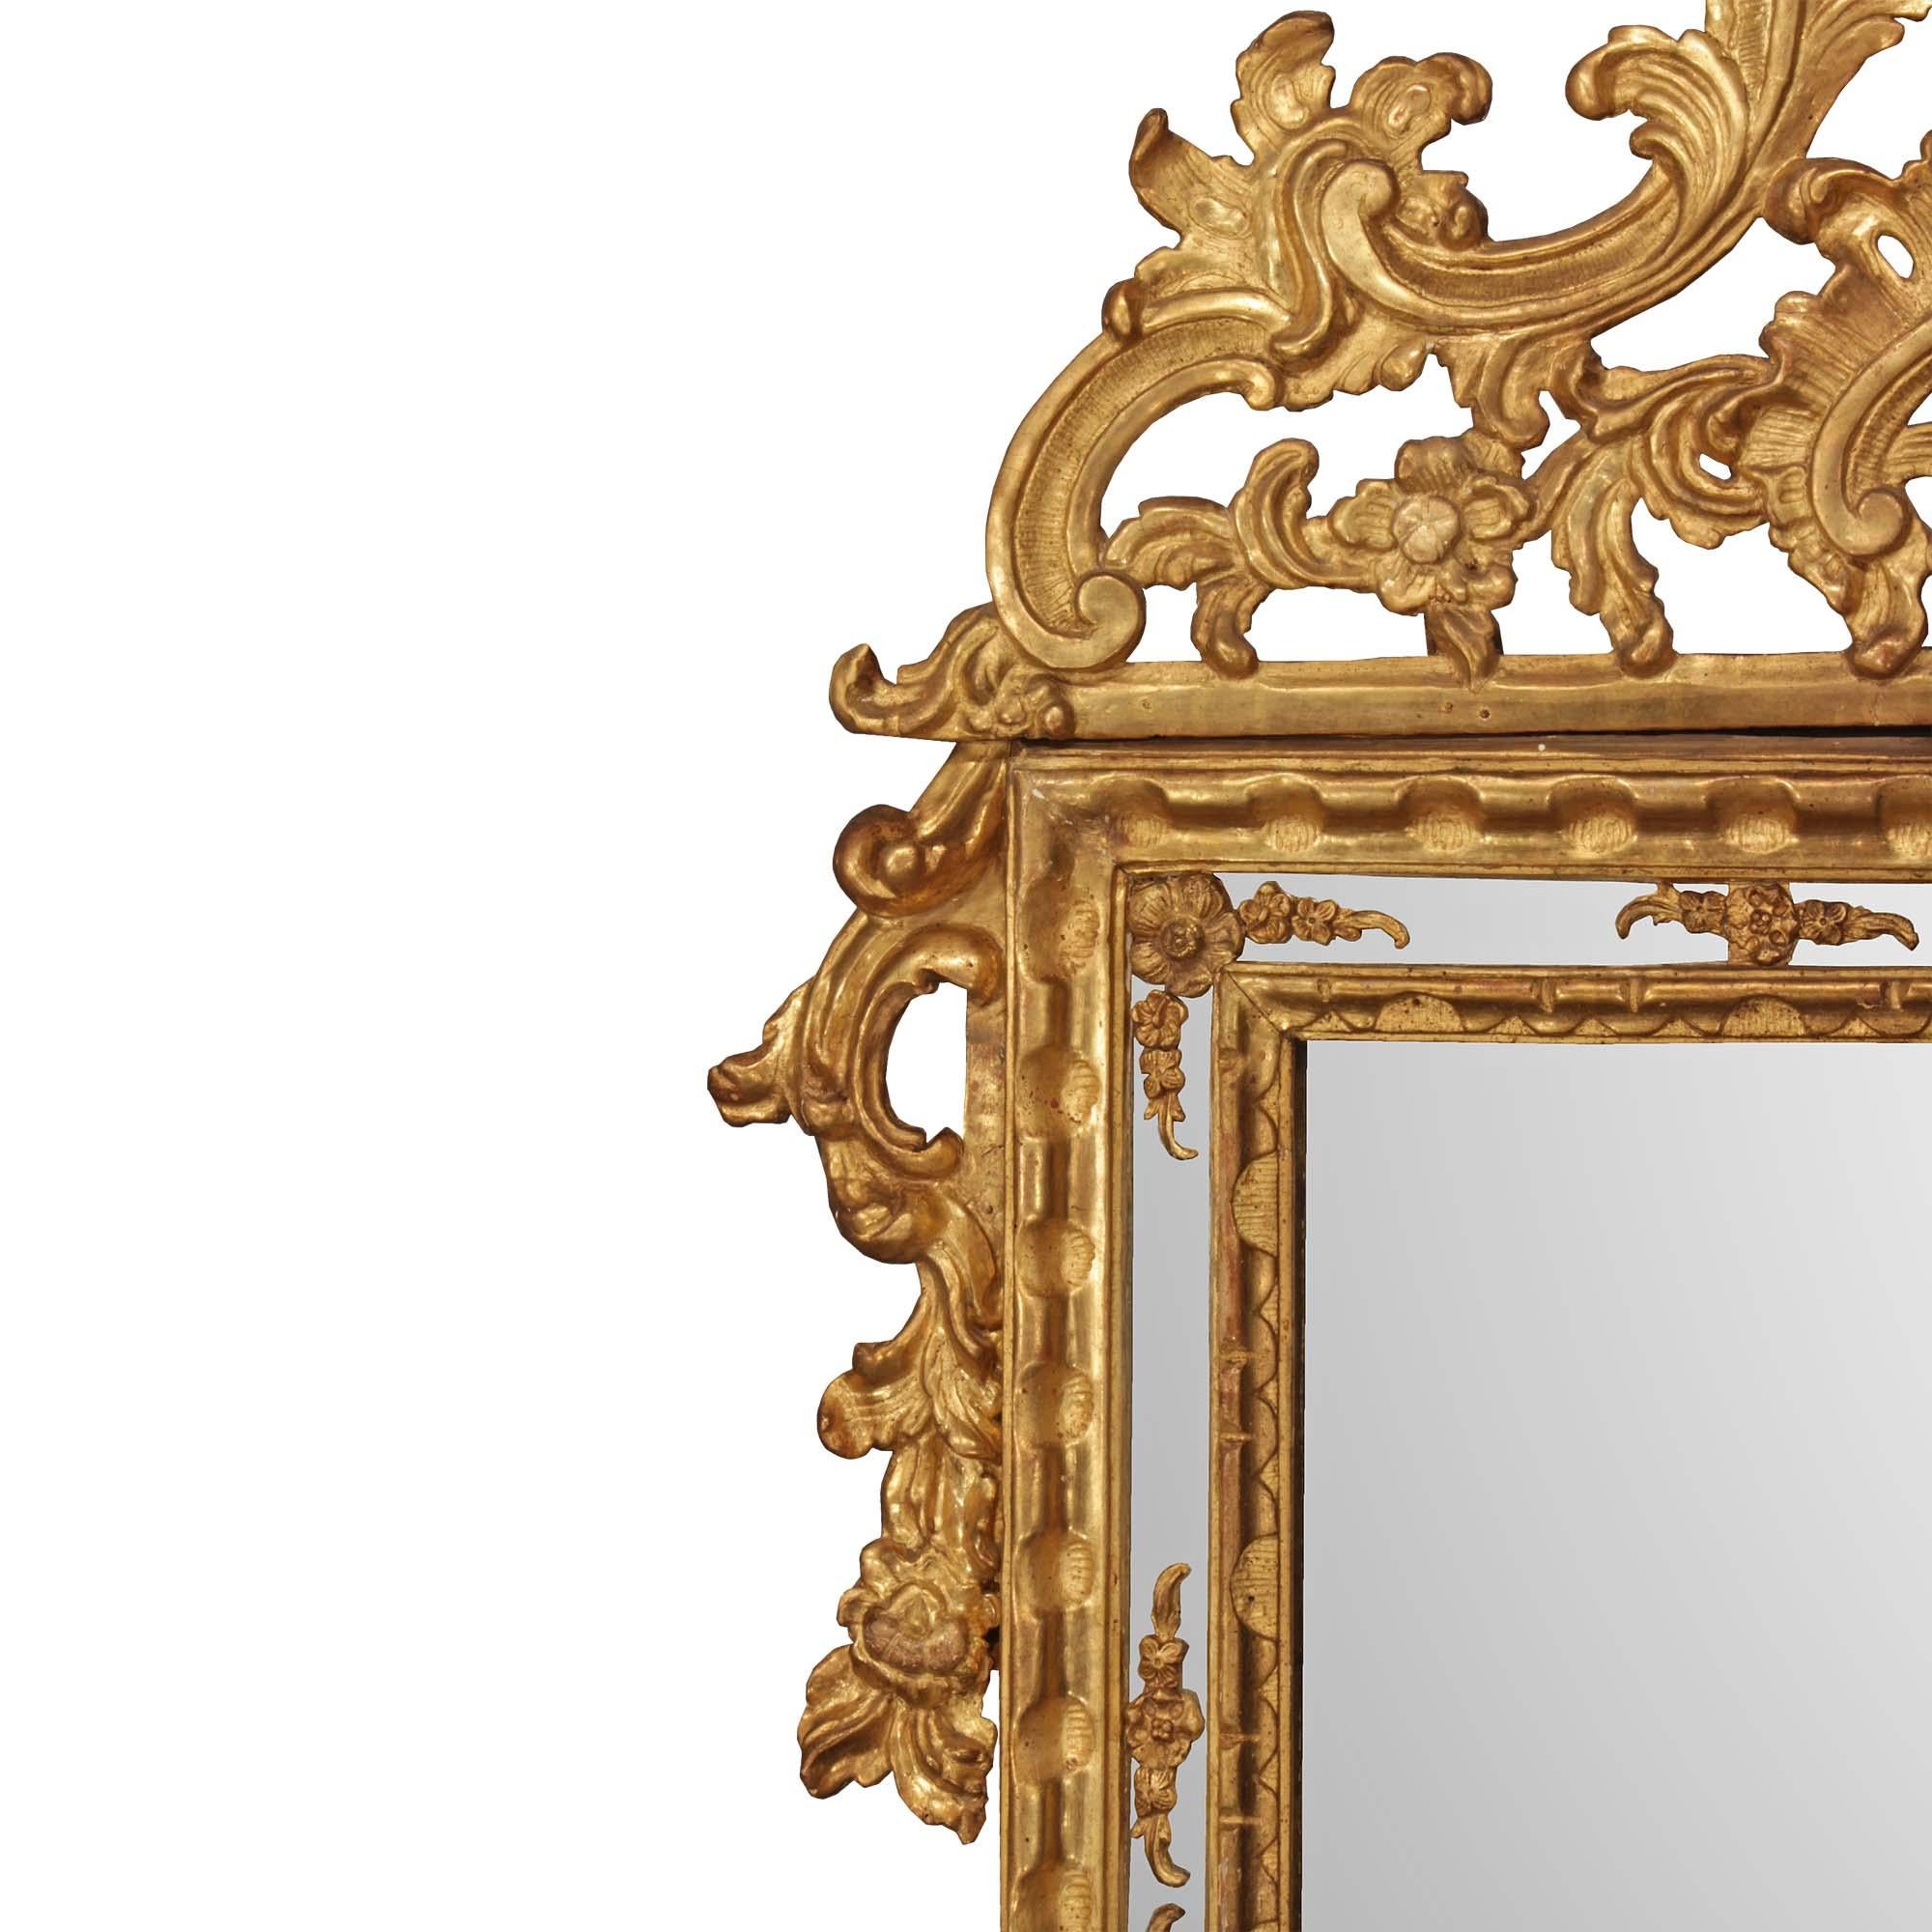 Superbe miroir italien du XVIIIe siècle, d'époque Louis XIV, à double cadre en bois doré. La plaque de miroir originale est encadrée d'un bandeau sculpté dans une finition satinée et brunie et d'une élégante bordure de plaque de miroir avec